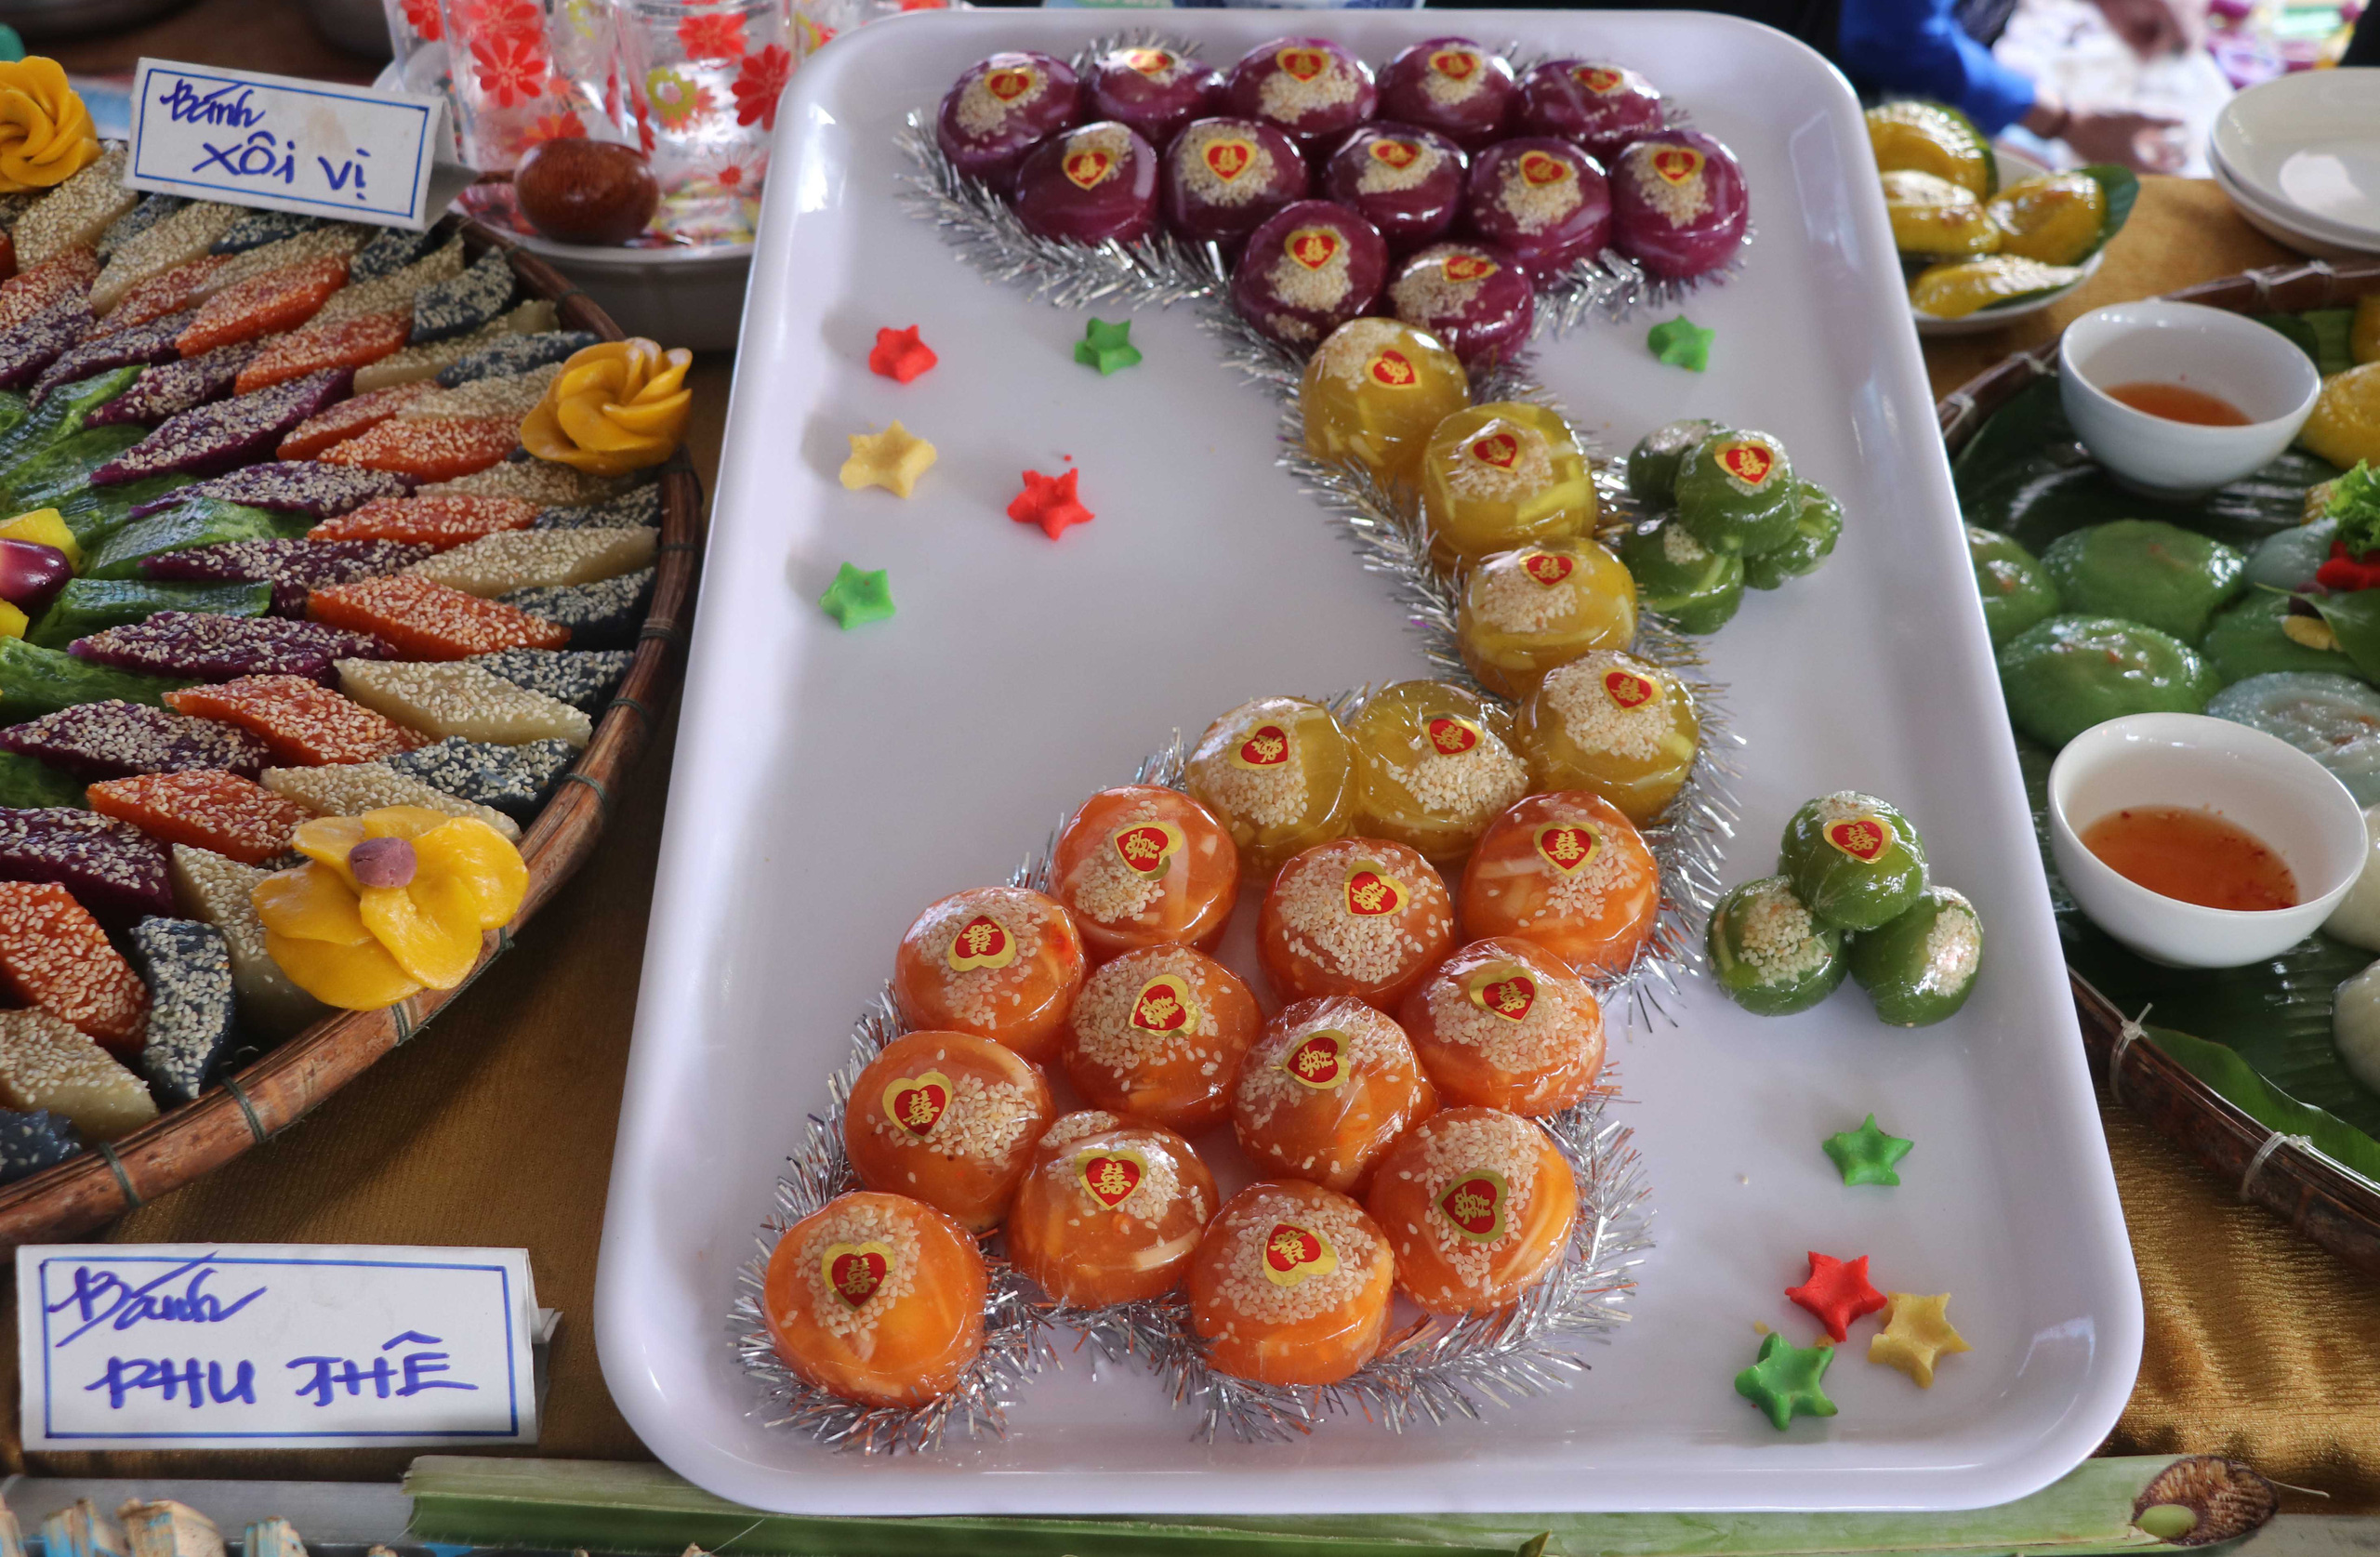 Đặc sắc bánh “phu thê” thể hiện chủ quyền biển đảo Việt Nam - Ảnh 1.